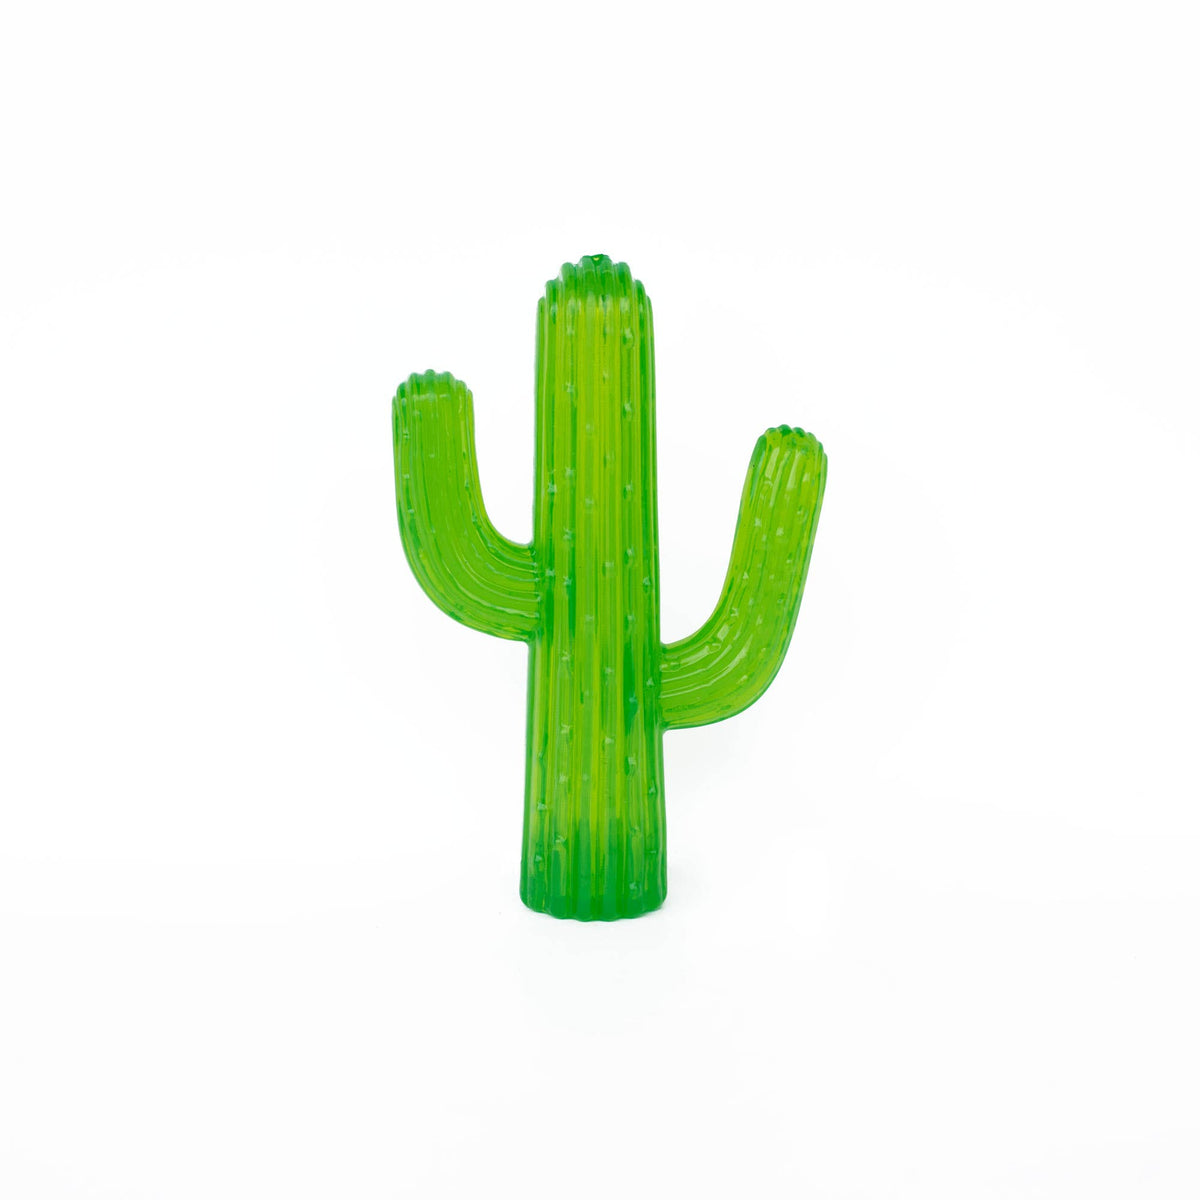 Tuff Cactus